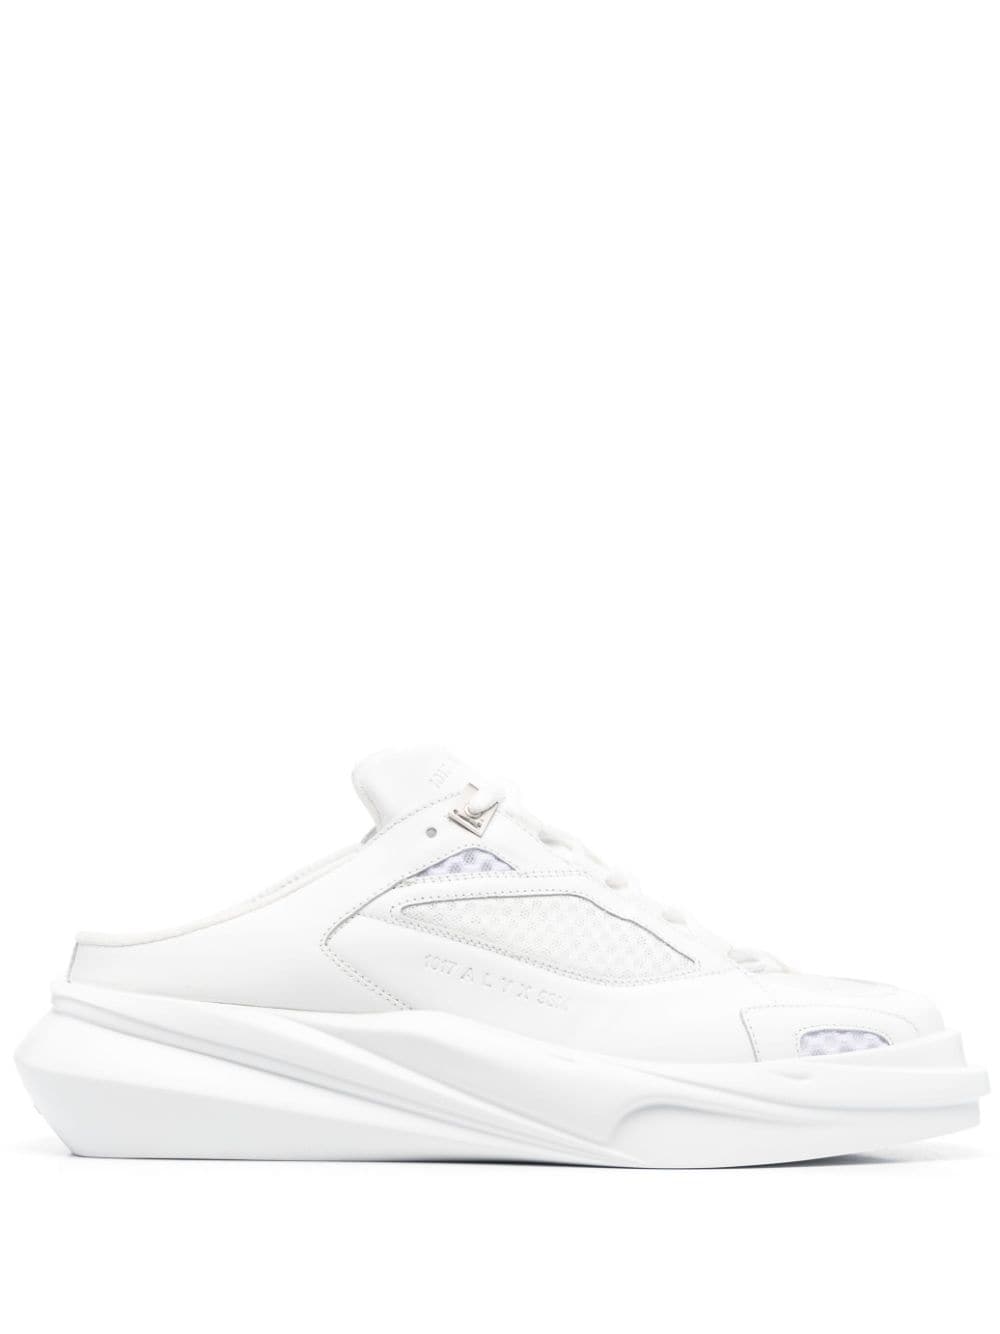 1017 ALYX 9SM Mono slip-on sneakers - White